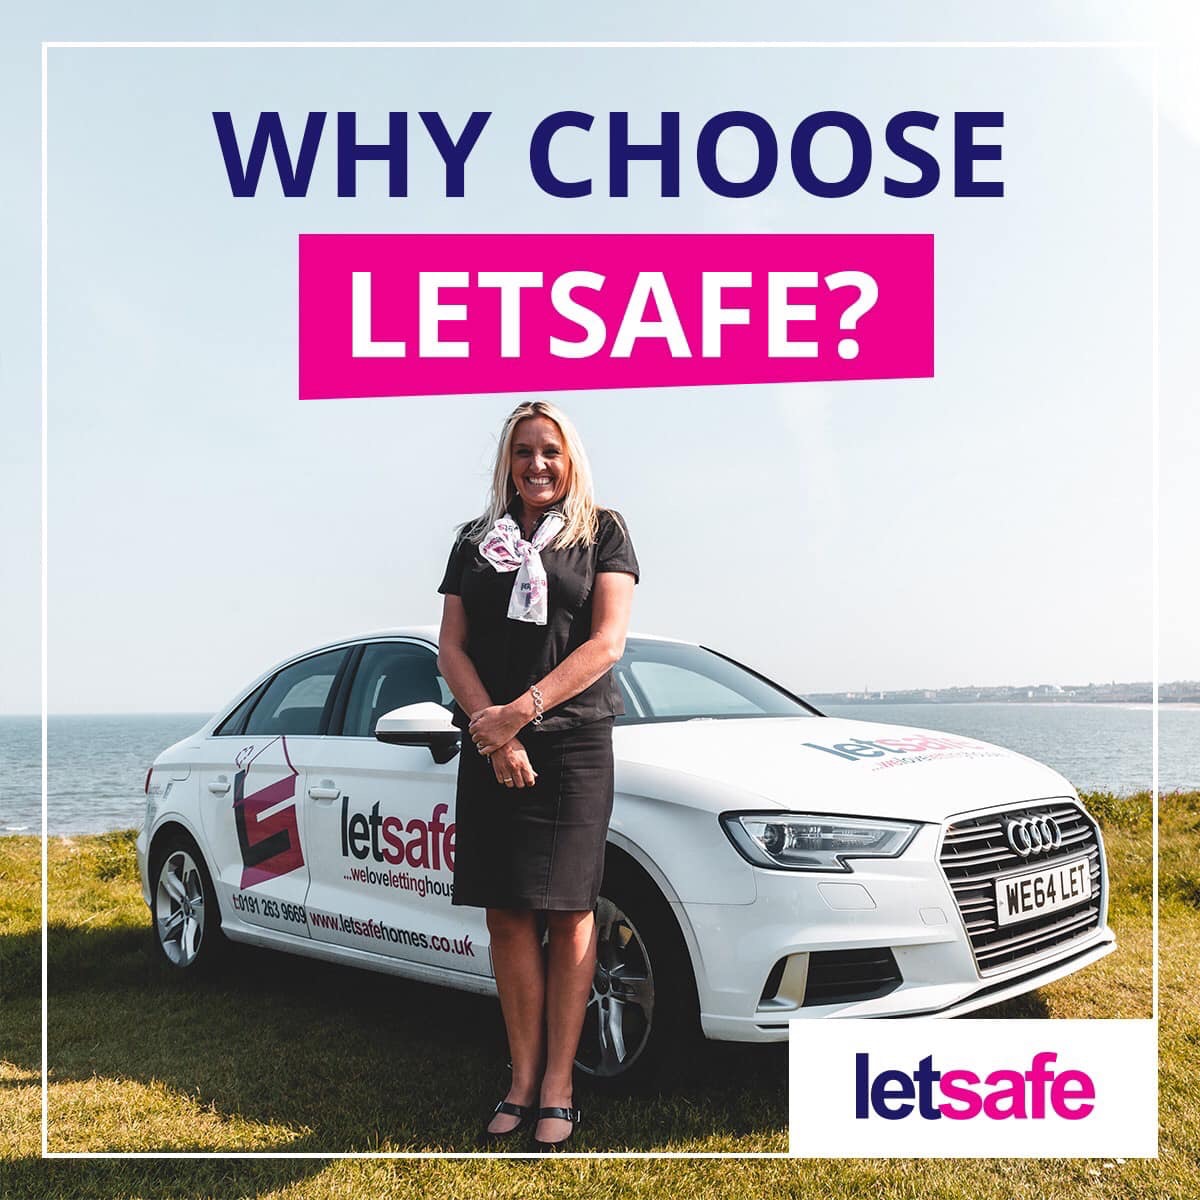 Why choose LetSafe